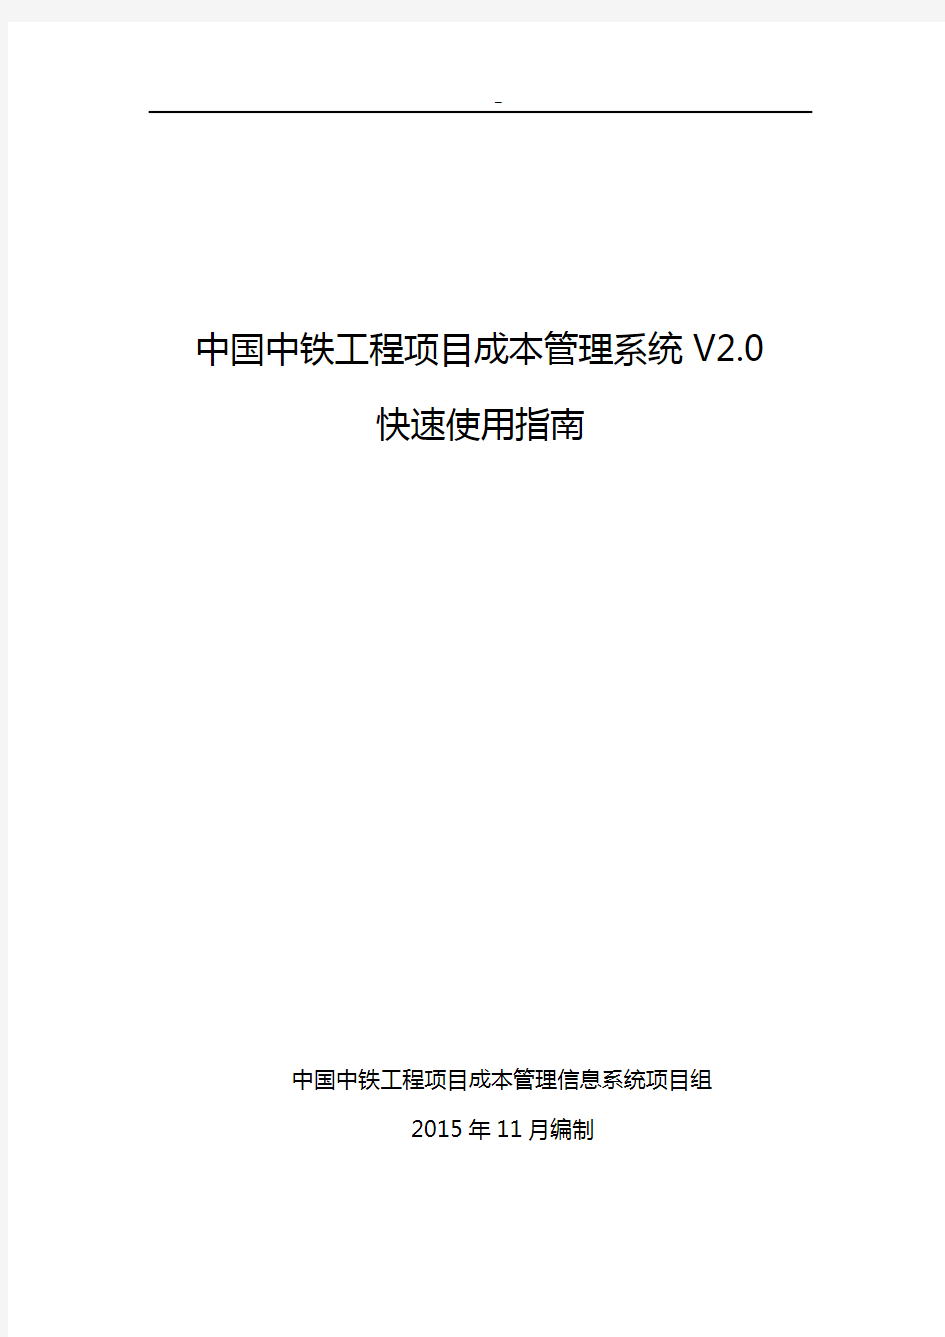 中国中铁工程项目开发成本管理组织信息系统V2.0快速使用指南